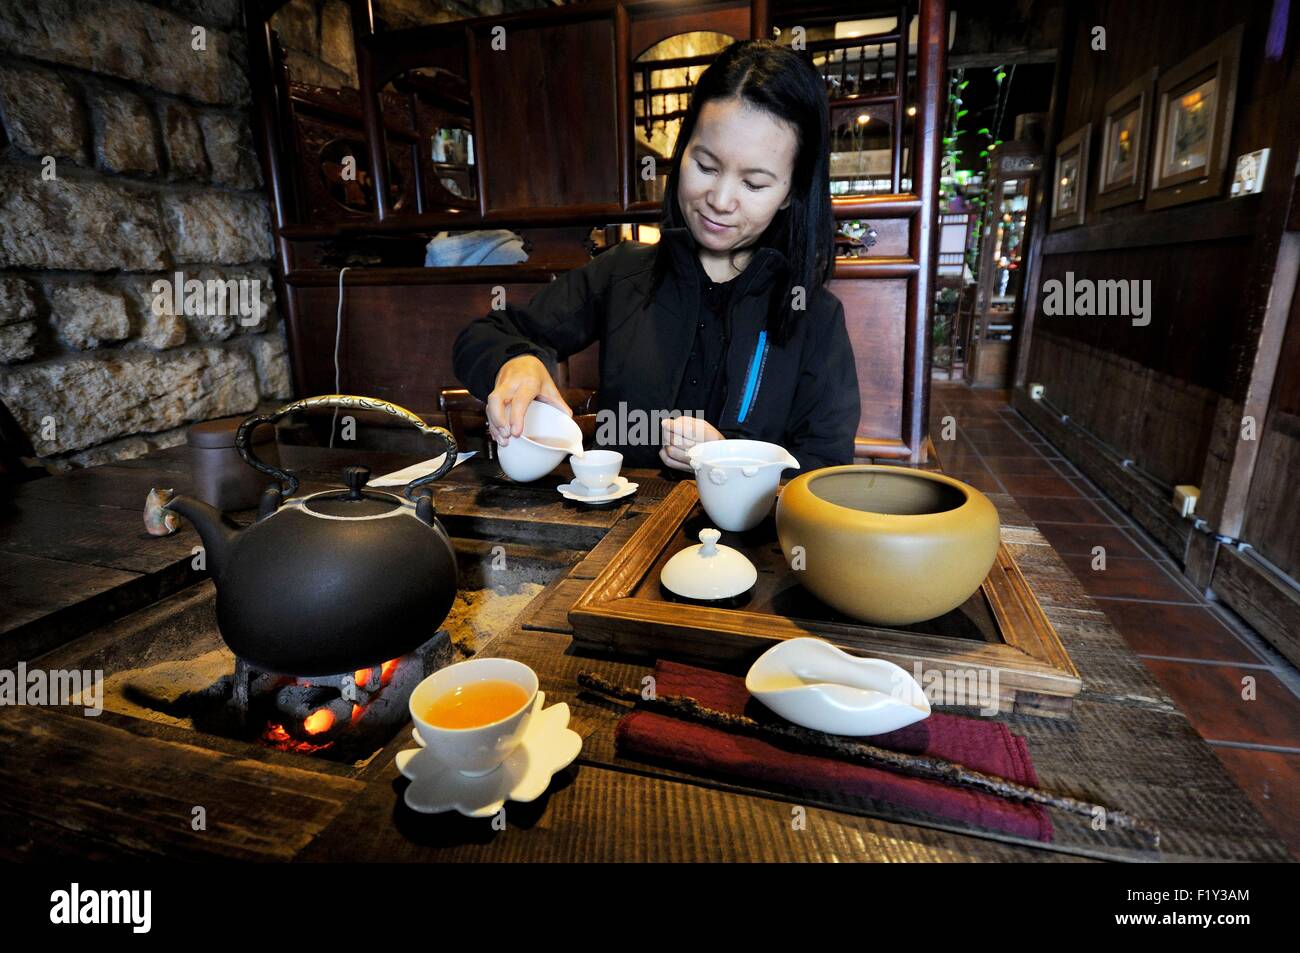 Taiwan, New Taipei City, Ruifang, Jiufen (Chiufen), Asian woman in an old teahouse at 'Jiufen Tea House' Stock Photo